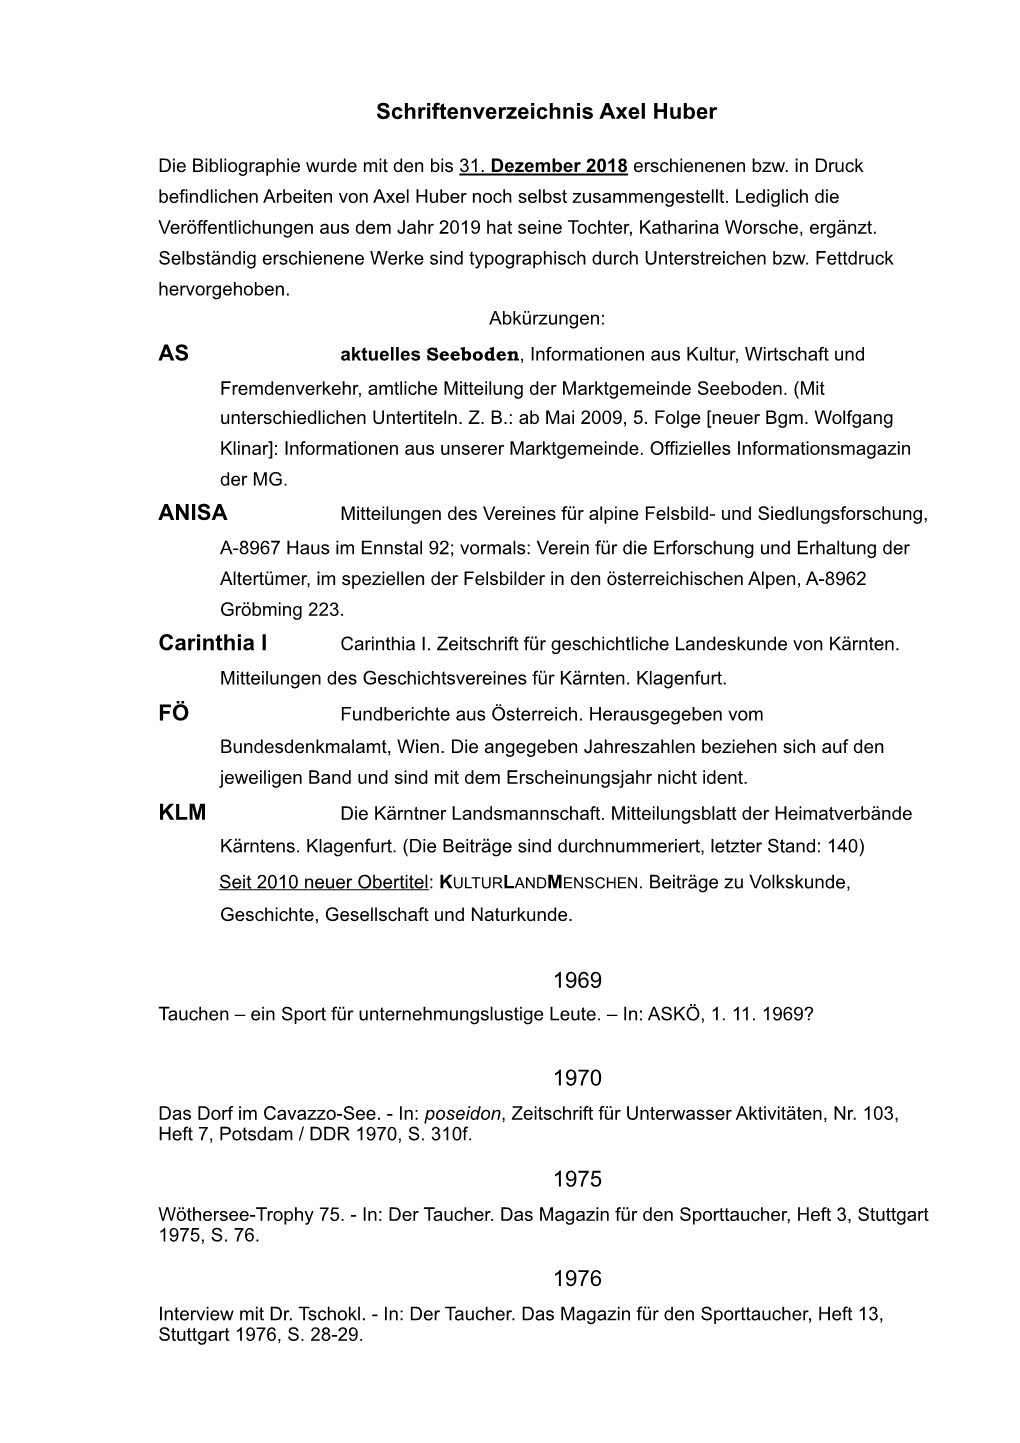 2019 Schriftenverzeichnis Axel Huber Überarbeitet